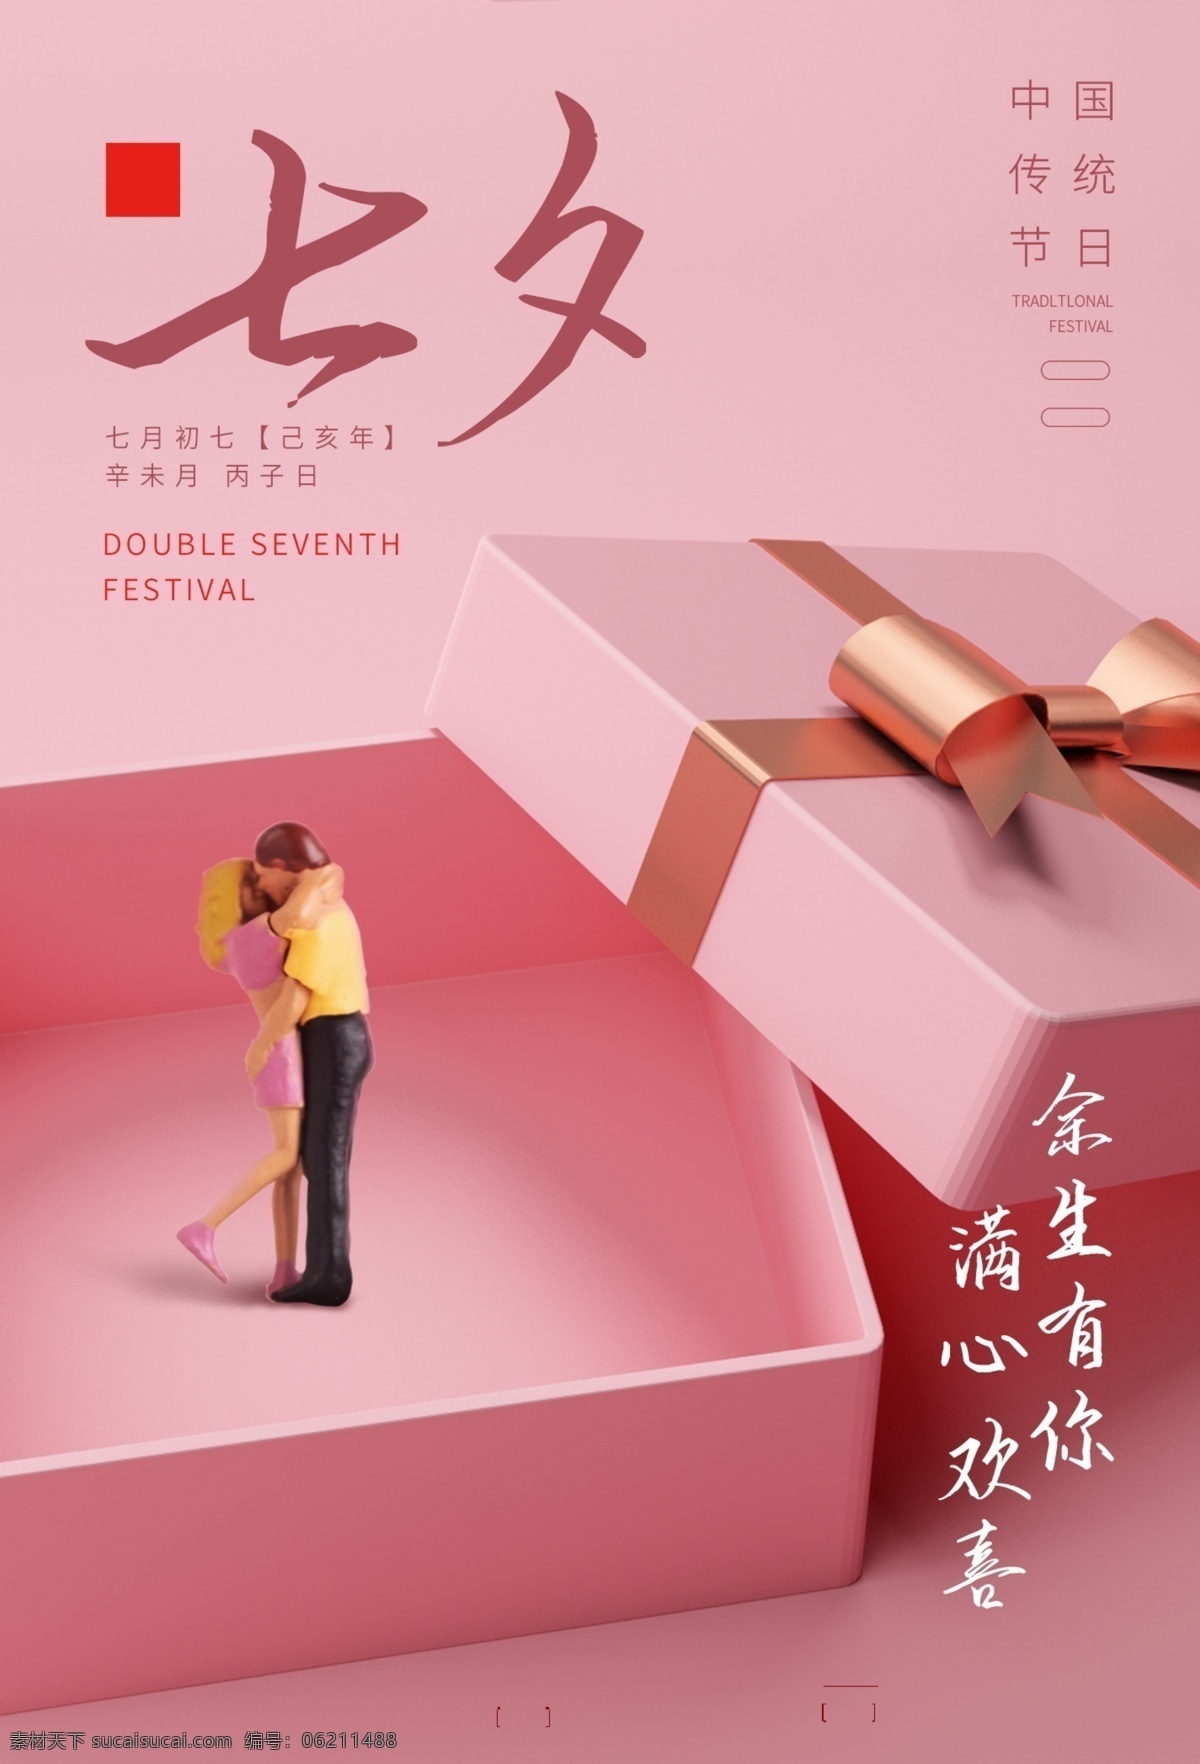 七夕 传统节日 活动 宣传海报 传统 节日 宣传 海报